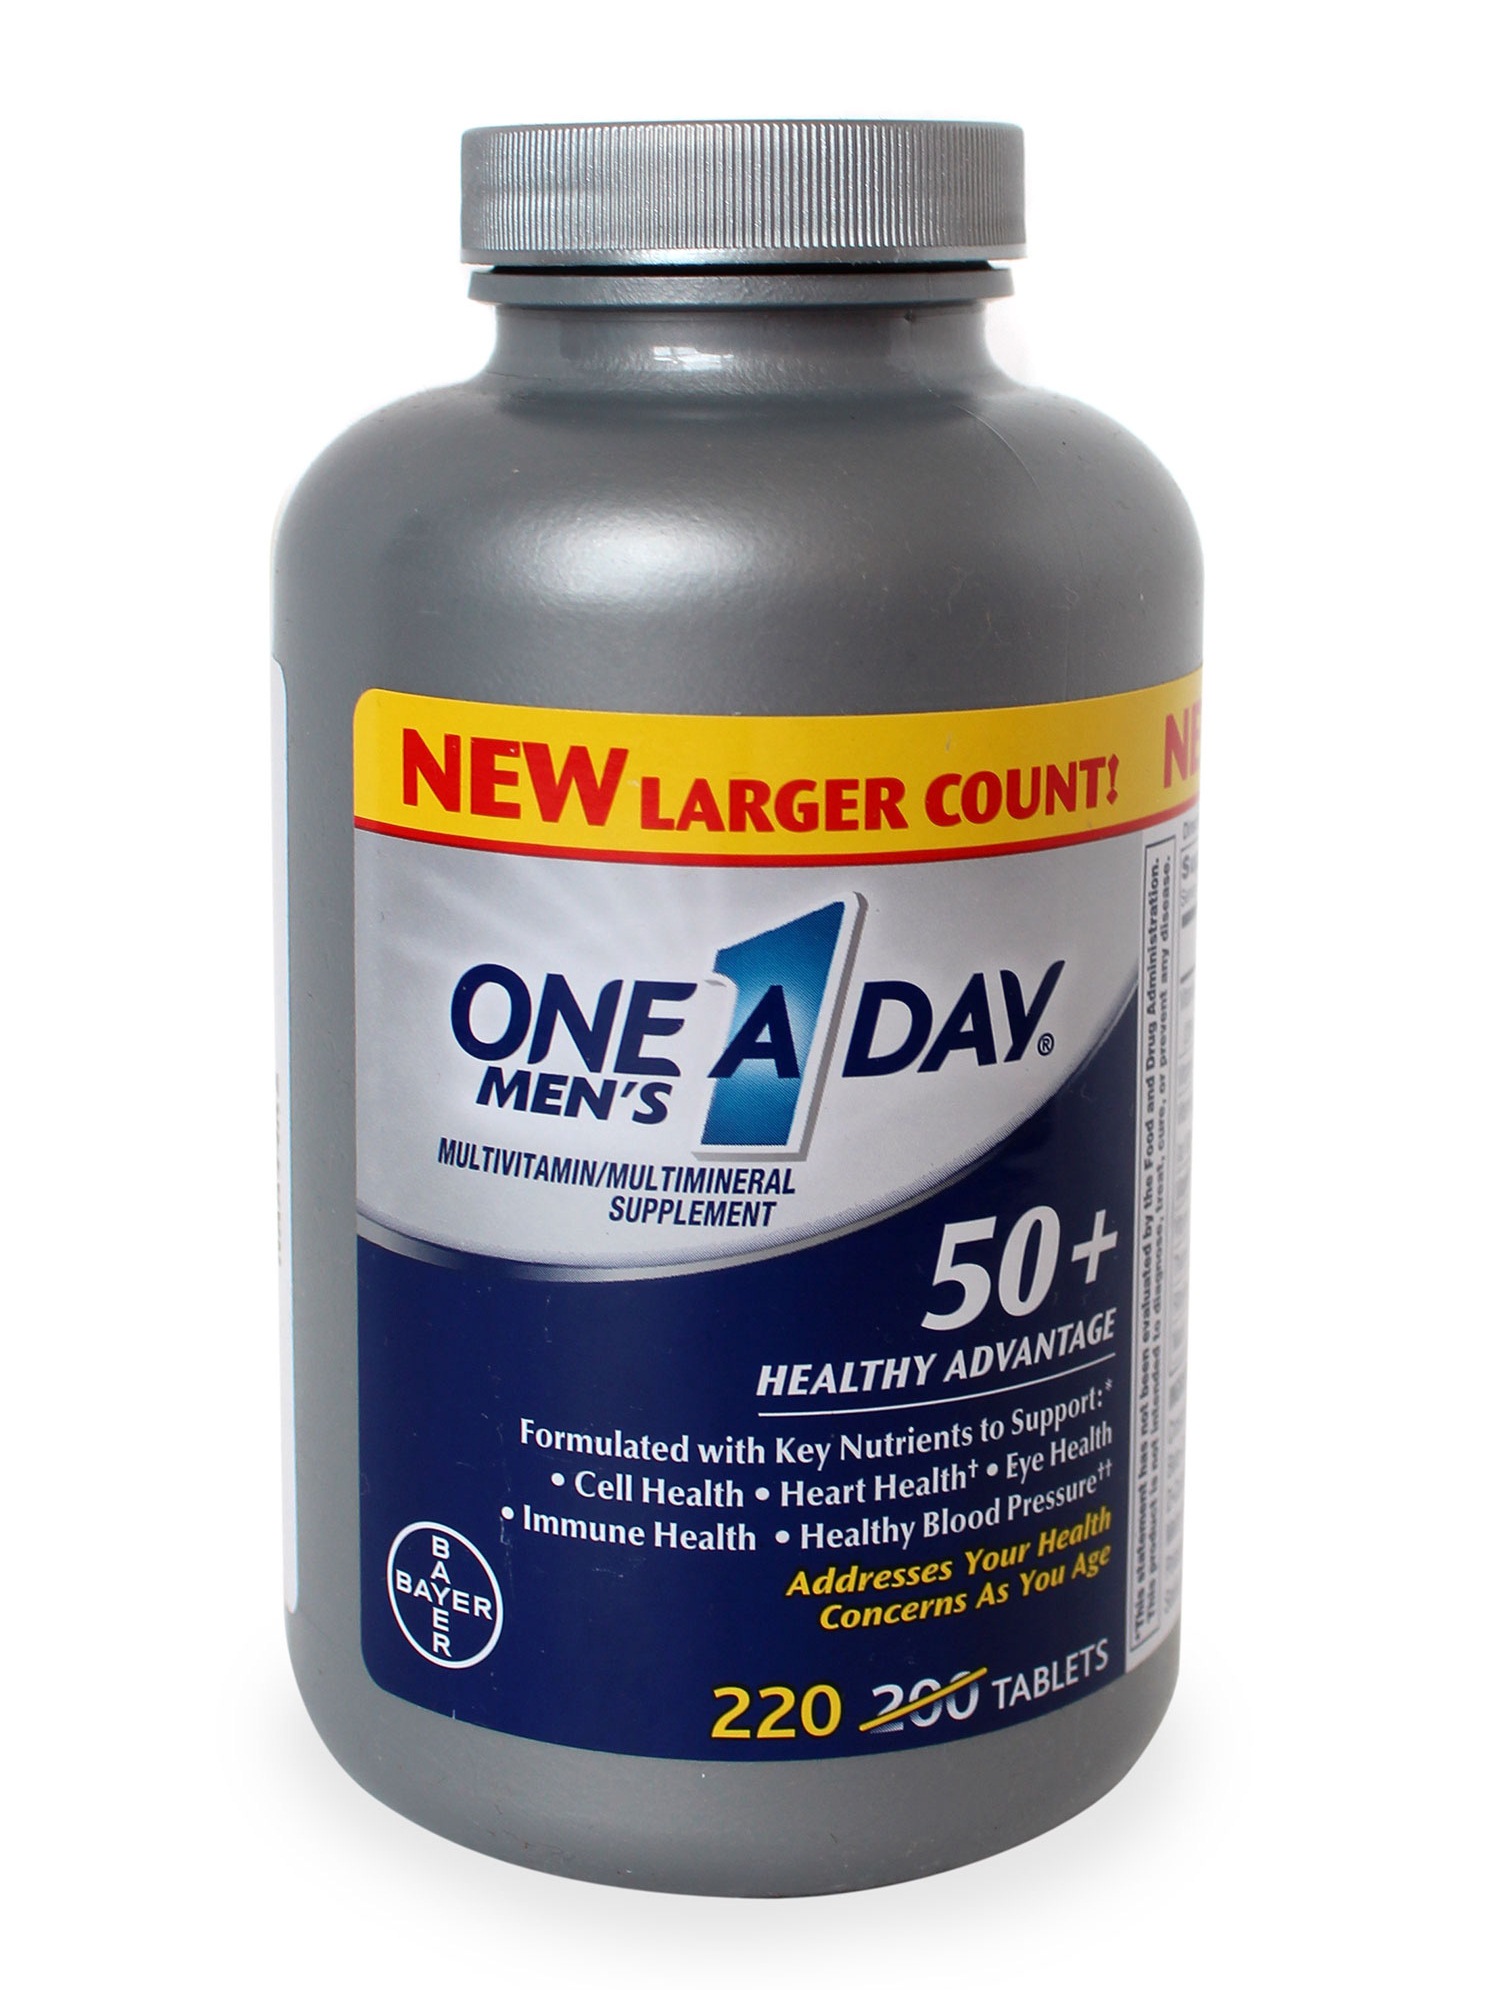 One A Day Men’s 50+ vitamin tổng hợp dạng viên uống dành cho đàn ông trên 50